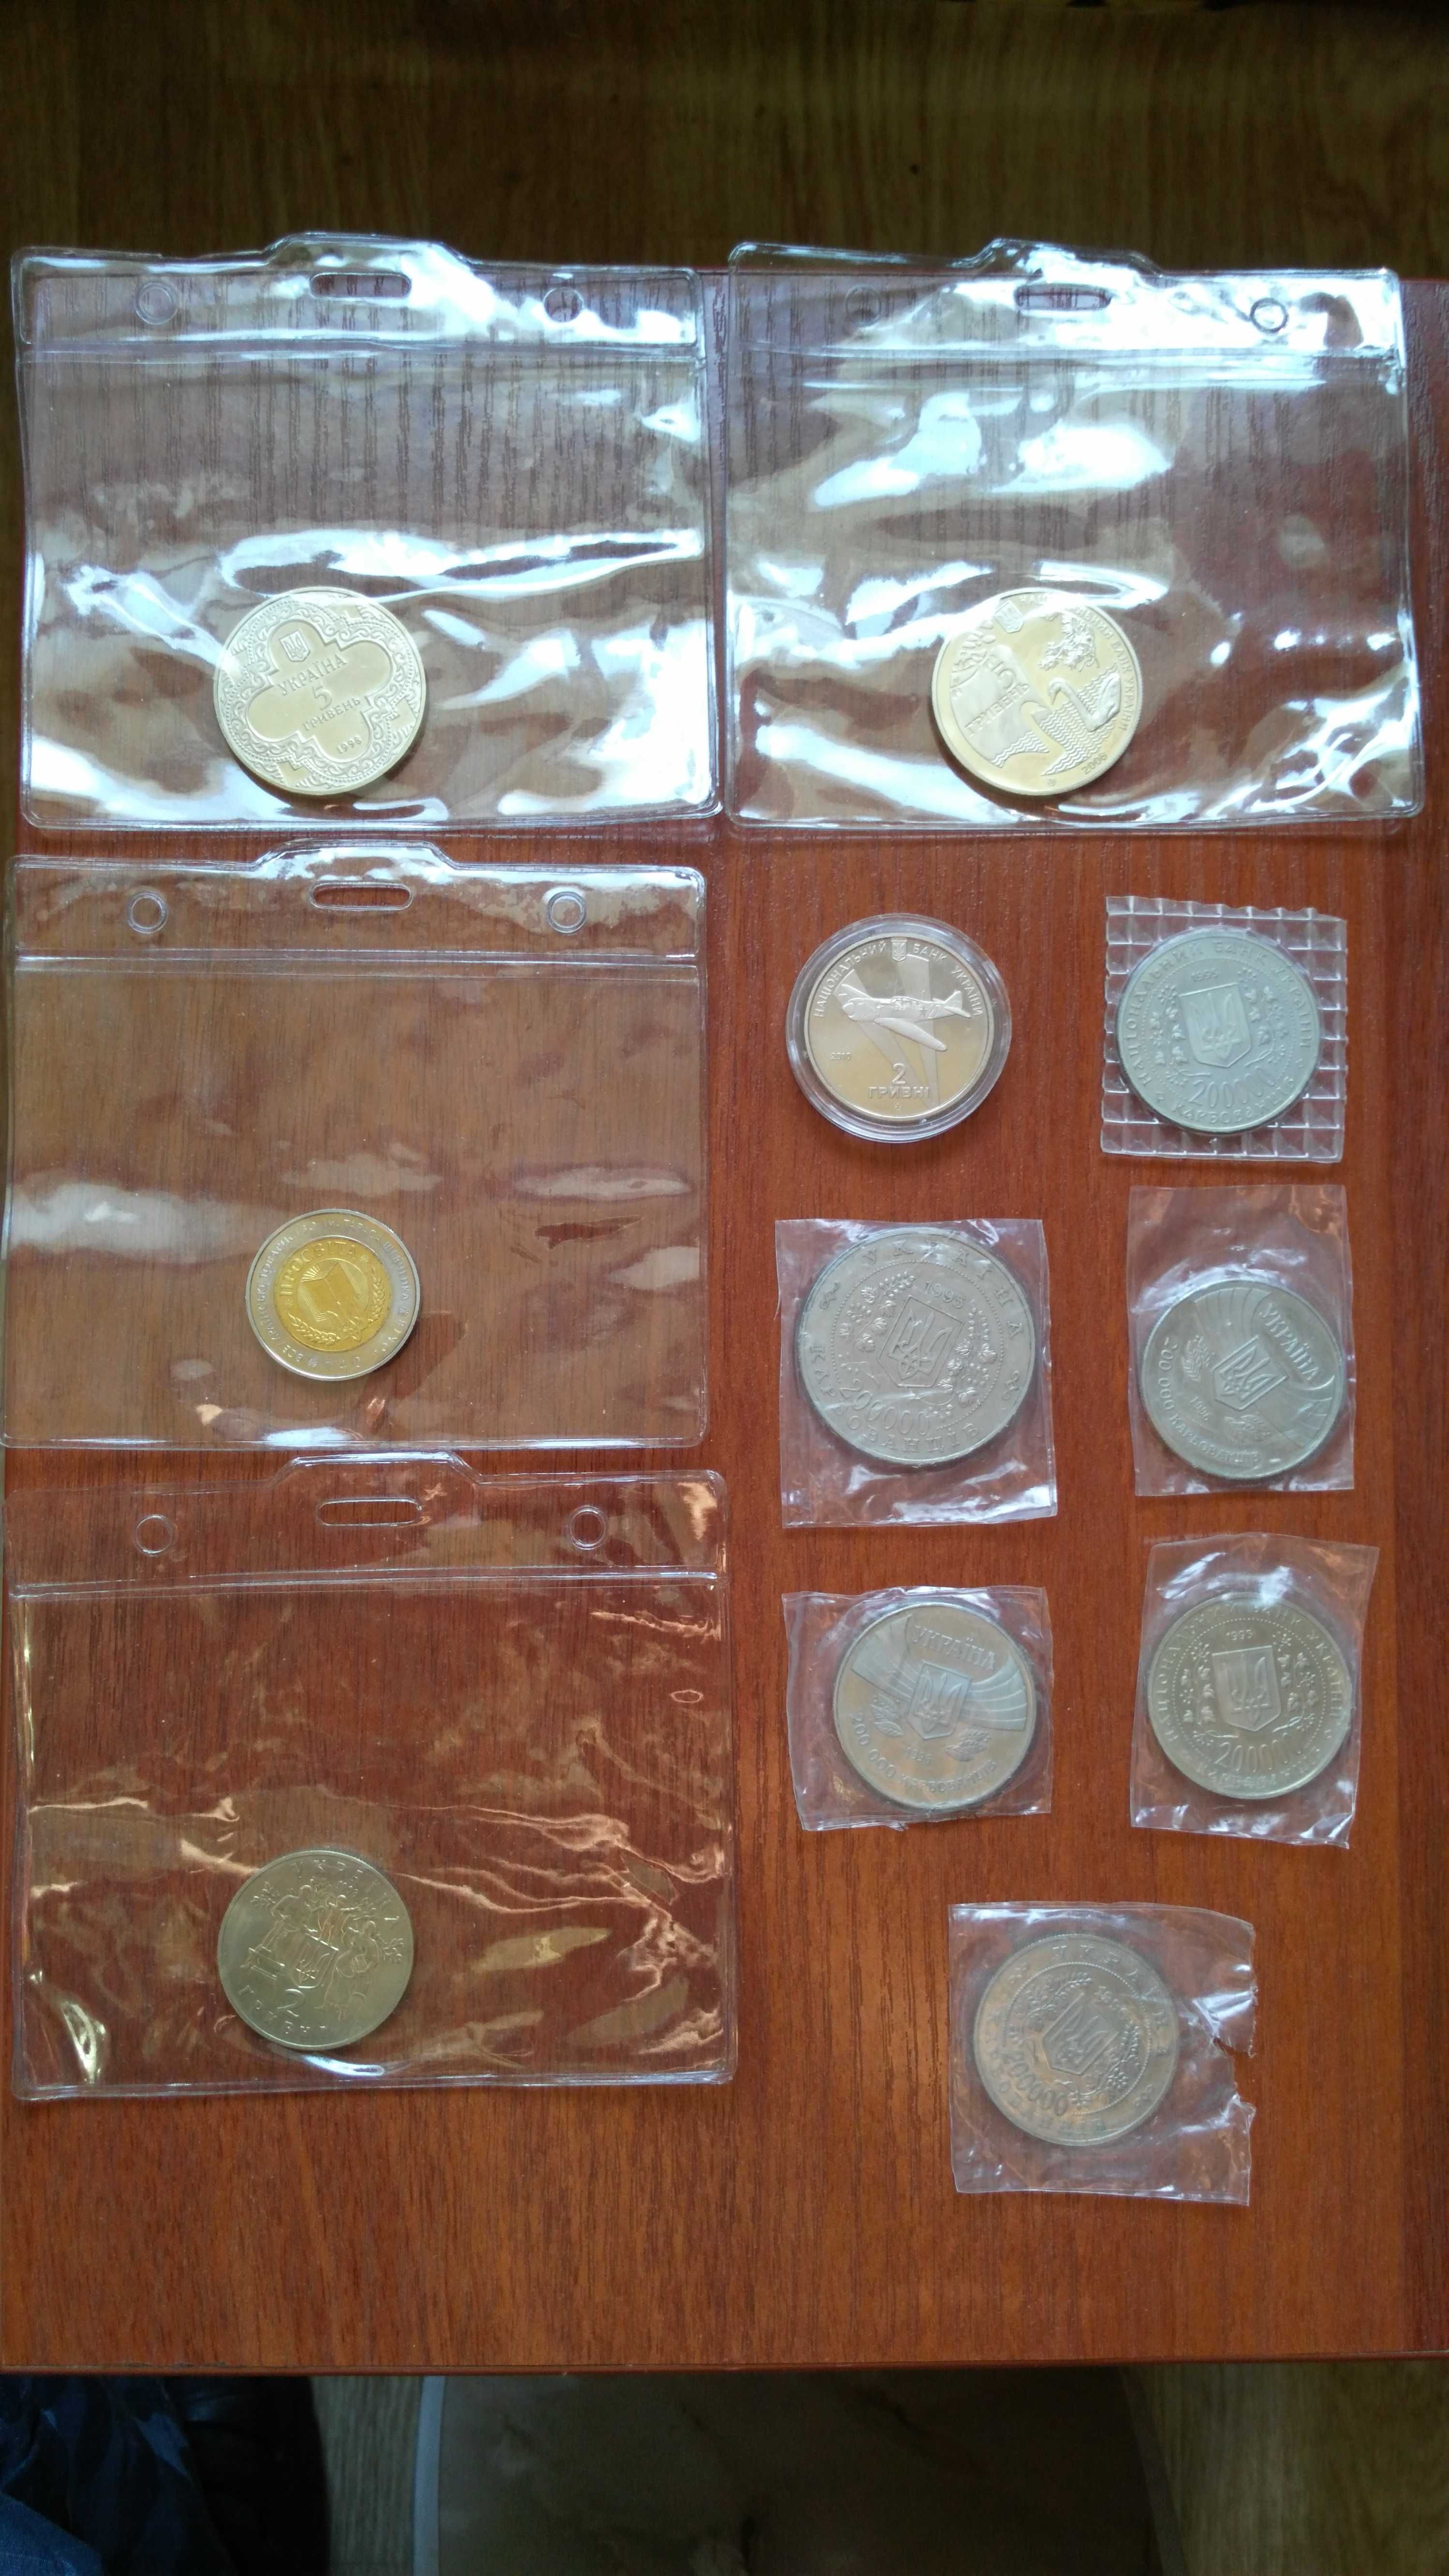 Юбилейные монеты Украины 200 000 карбованців, 5 гривень, 2 гривні